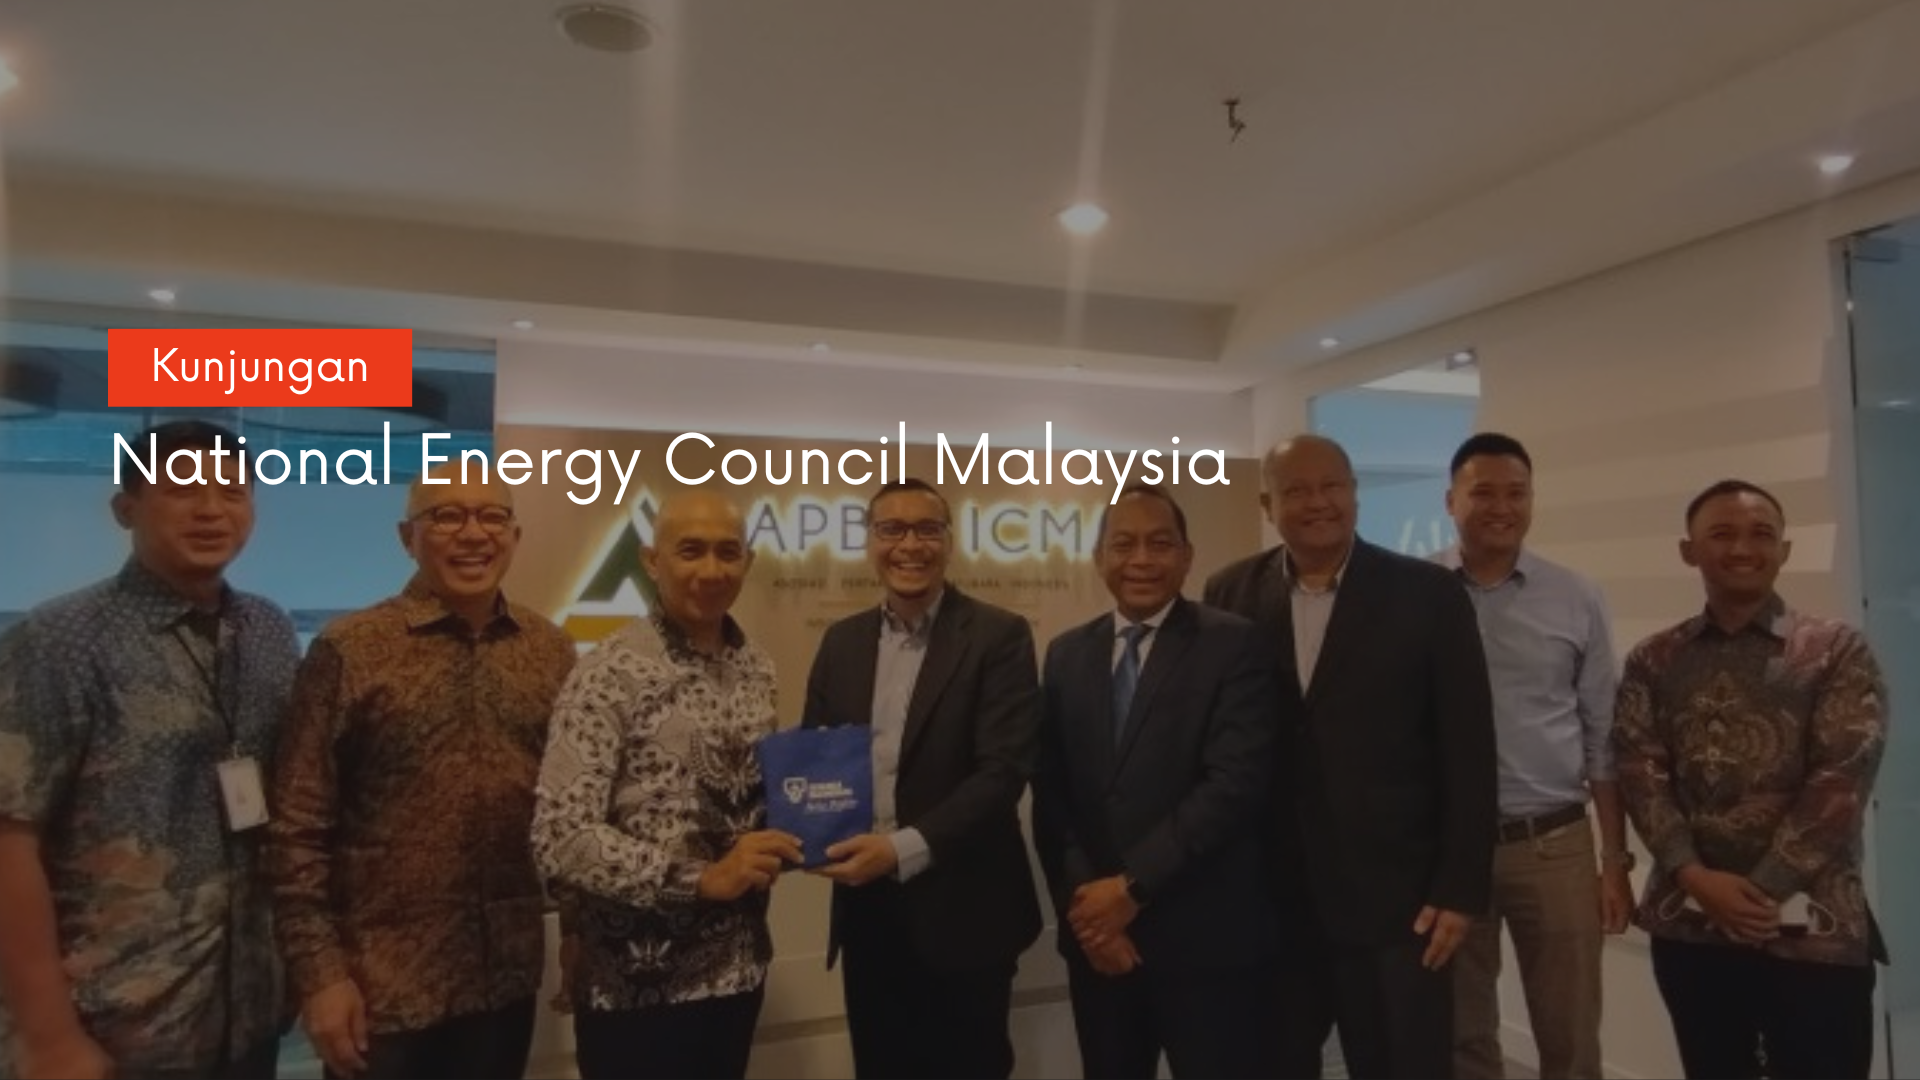 KUNJUNGAN NATIONAL ENERGI COUNCIL MALAYSIA